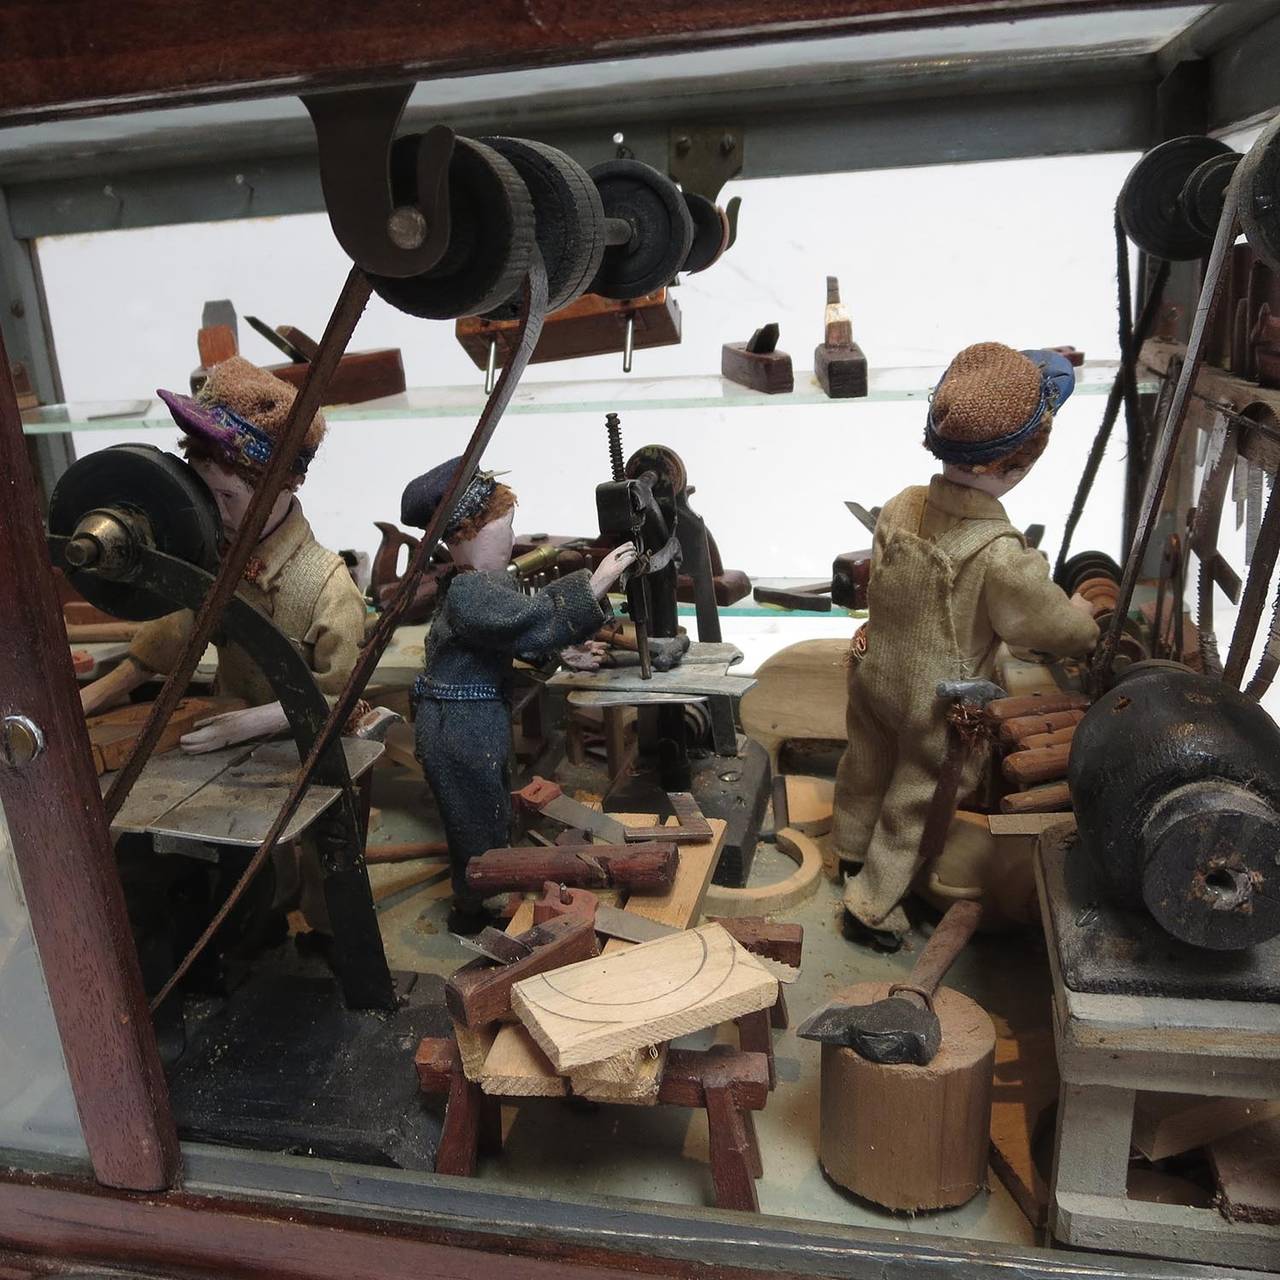 Mid-20th Century Folsom Prison Inmate Folk Art Wood Shop Diorama